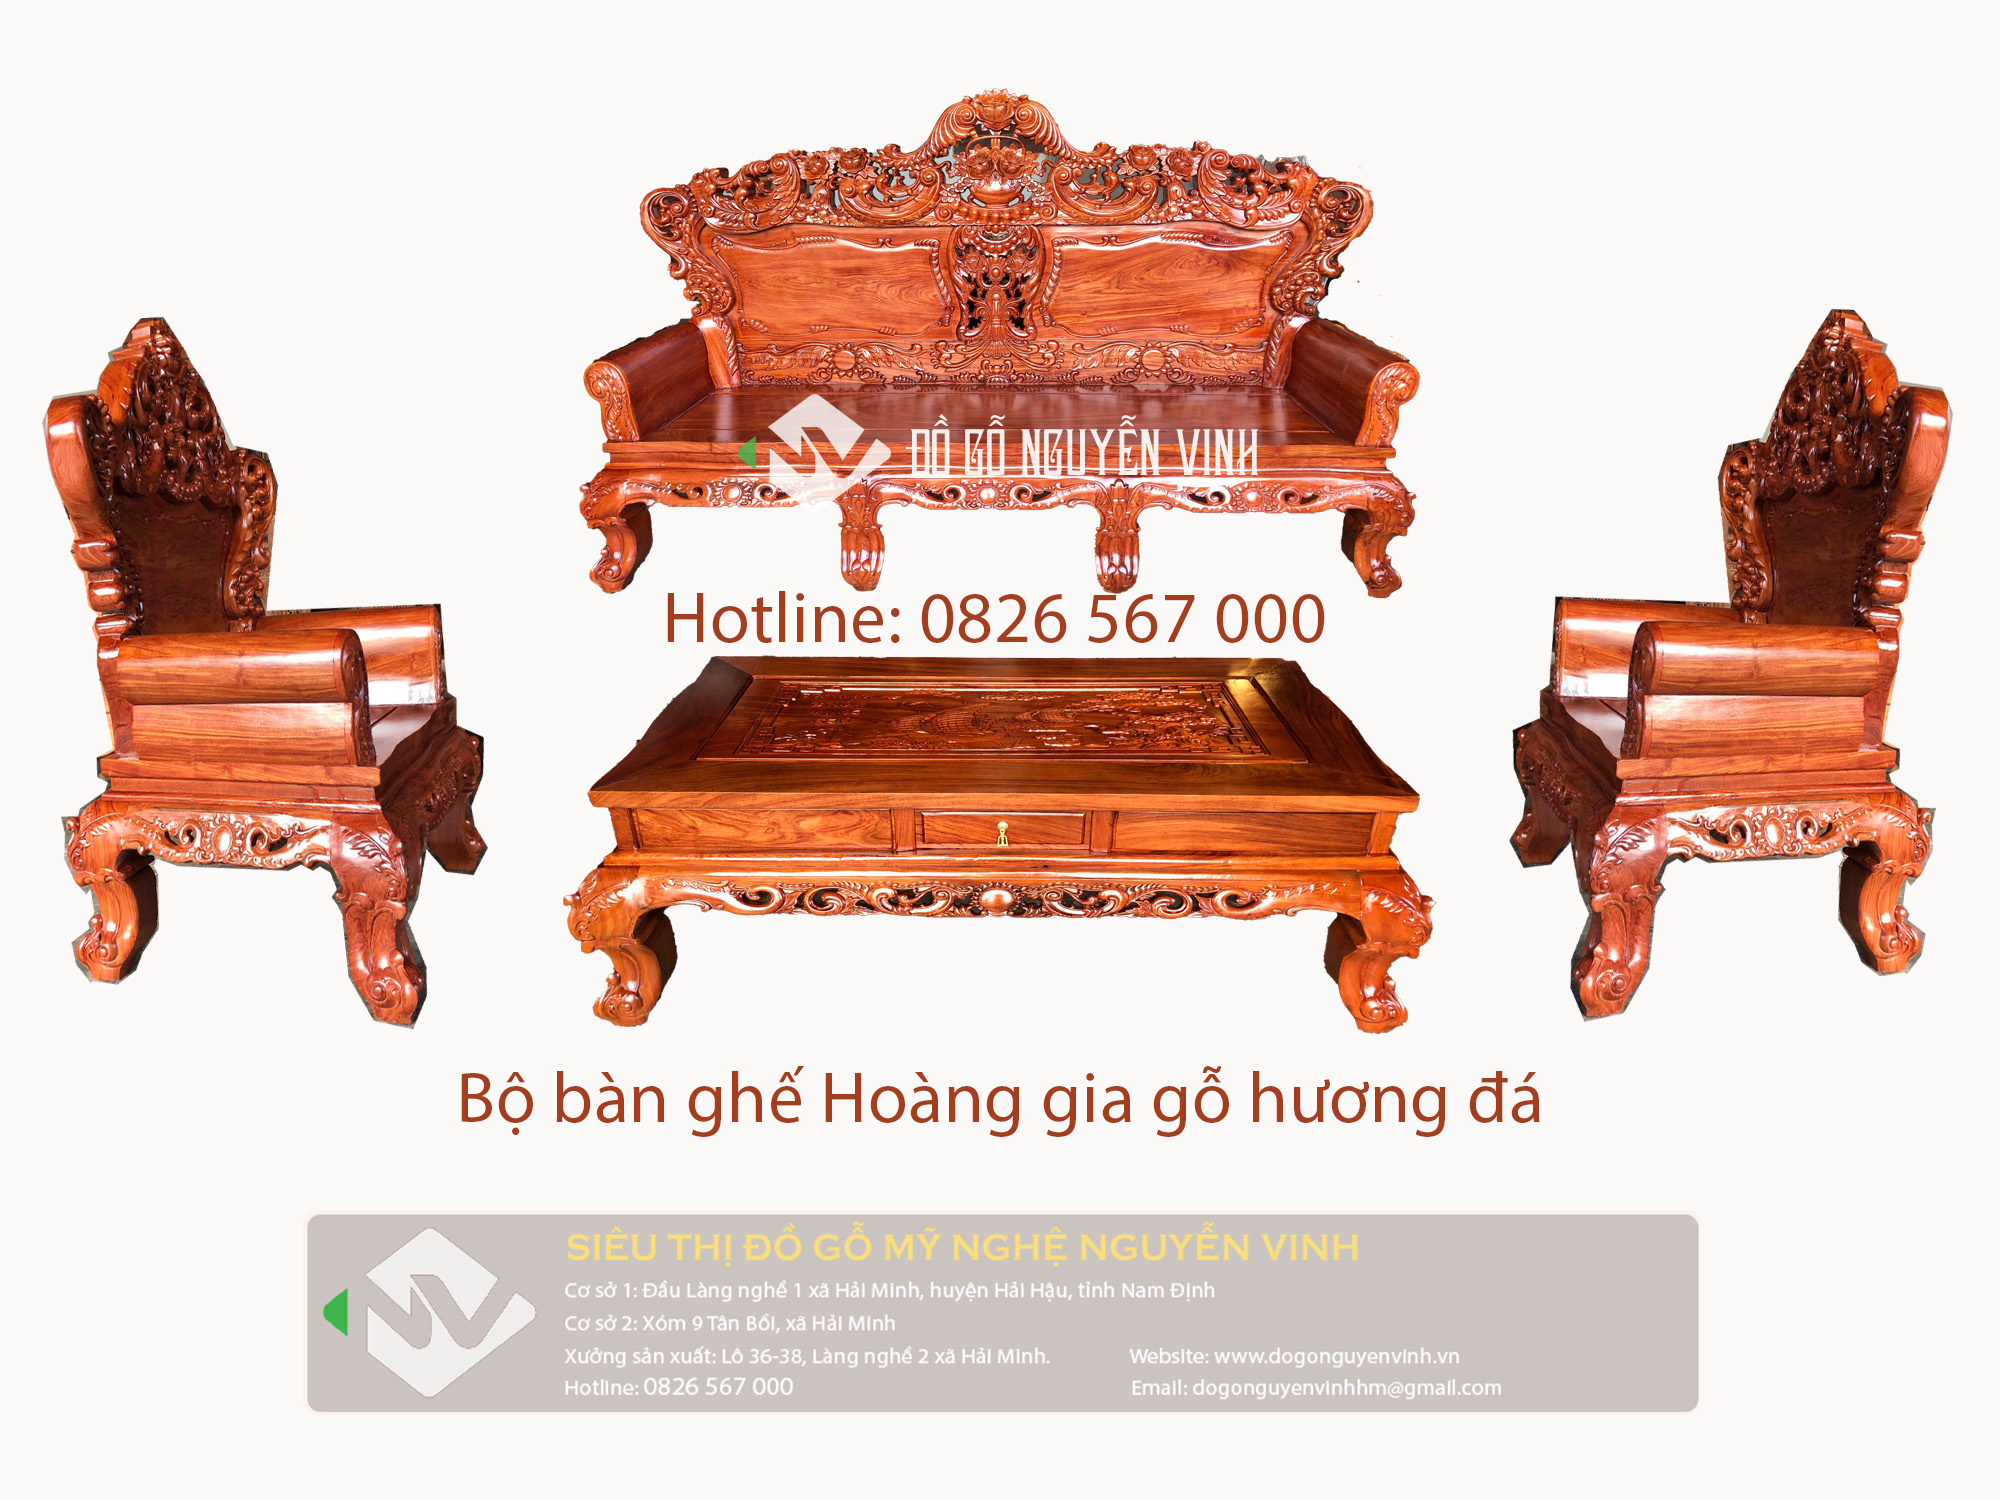 Bộ bàn ghế phòng khách hoàng gia gỗ hương đá của chúng tôi sẽ làm cho không gian phòng khách của bạn trở nên hoành tráng và sang trọng hơn bao giờ hết. Chúng tôi cam kết cung cấp cho bạn những sản phẩm chất lượng cao và độc đáo nhất.